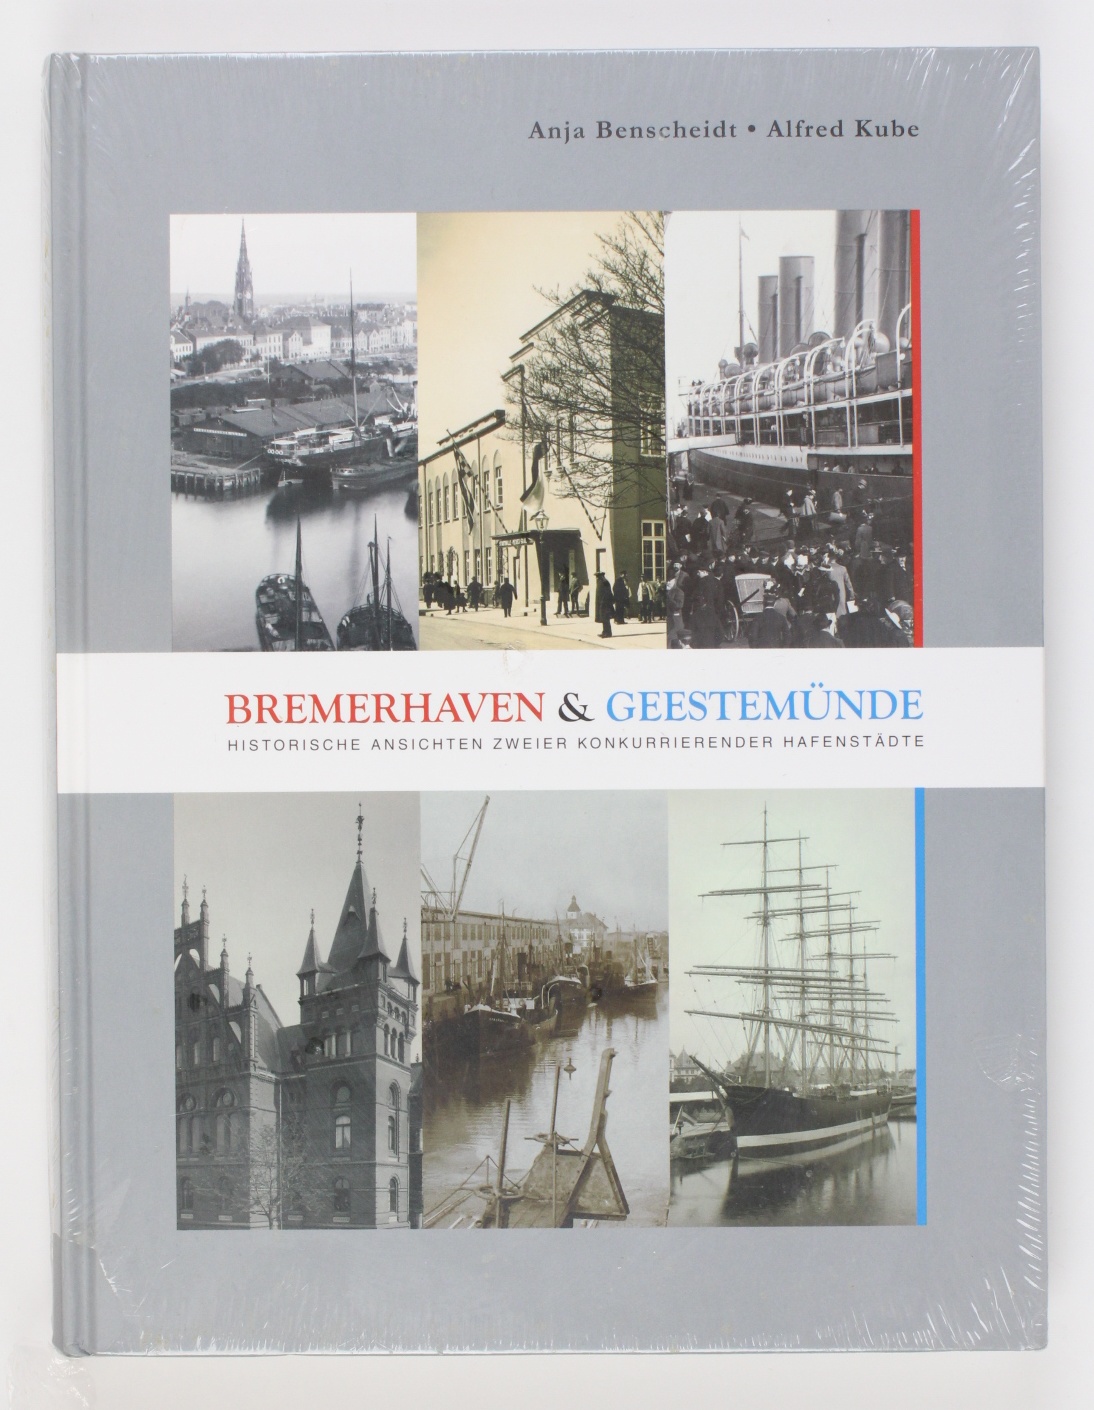 Bremerhaven & Geestemünde: Historische Ansichten zweier konkurrierender Hafenstädte - Benscheidt, Anja und Alfred Kube